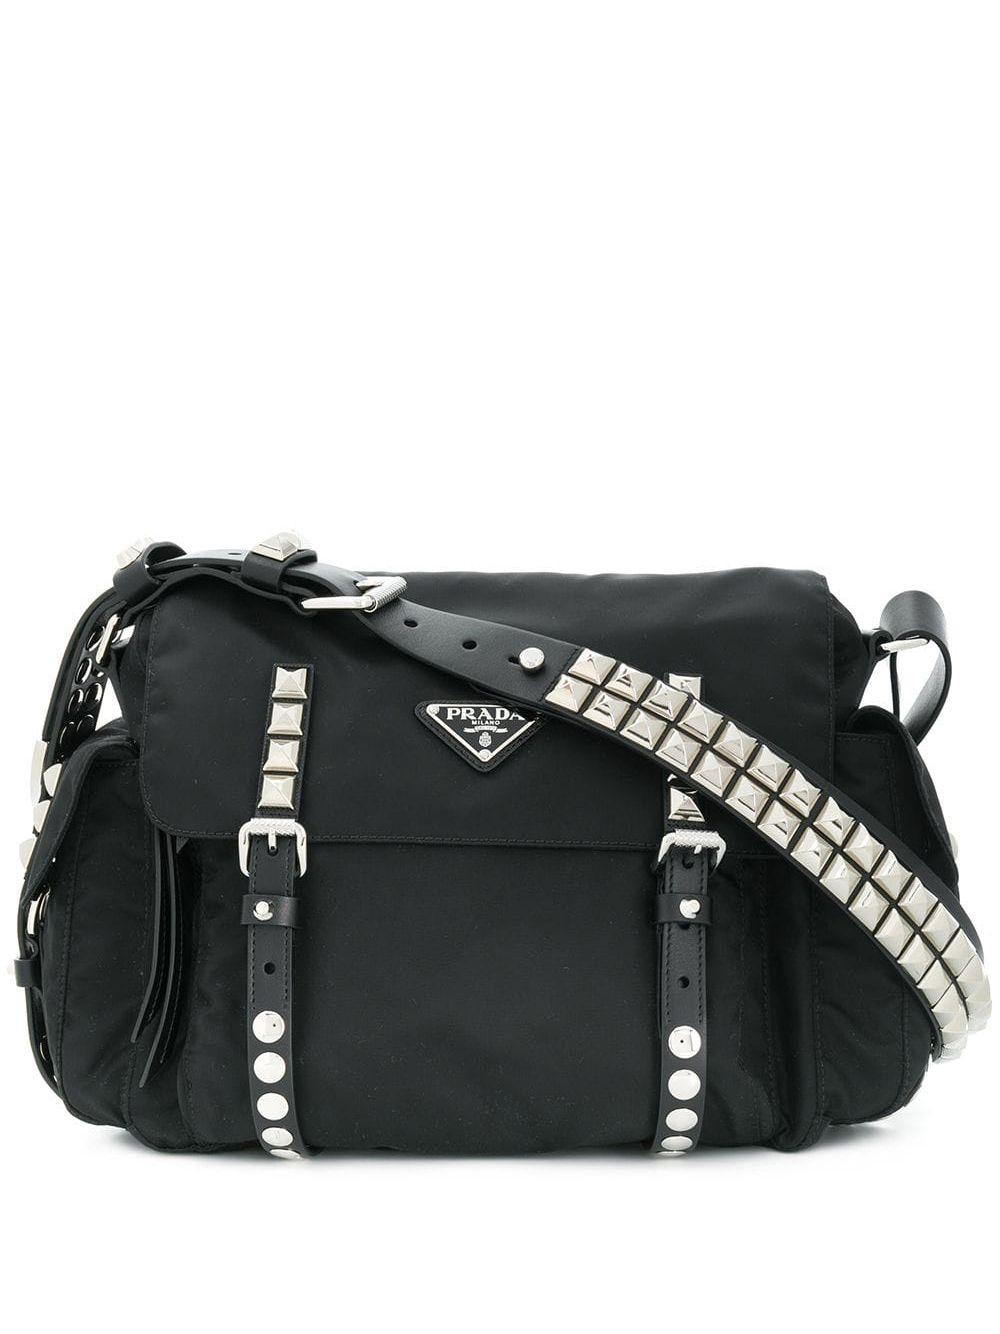 Prada Leather Studded Shoulder Bag in Black | Lyst